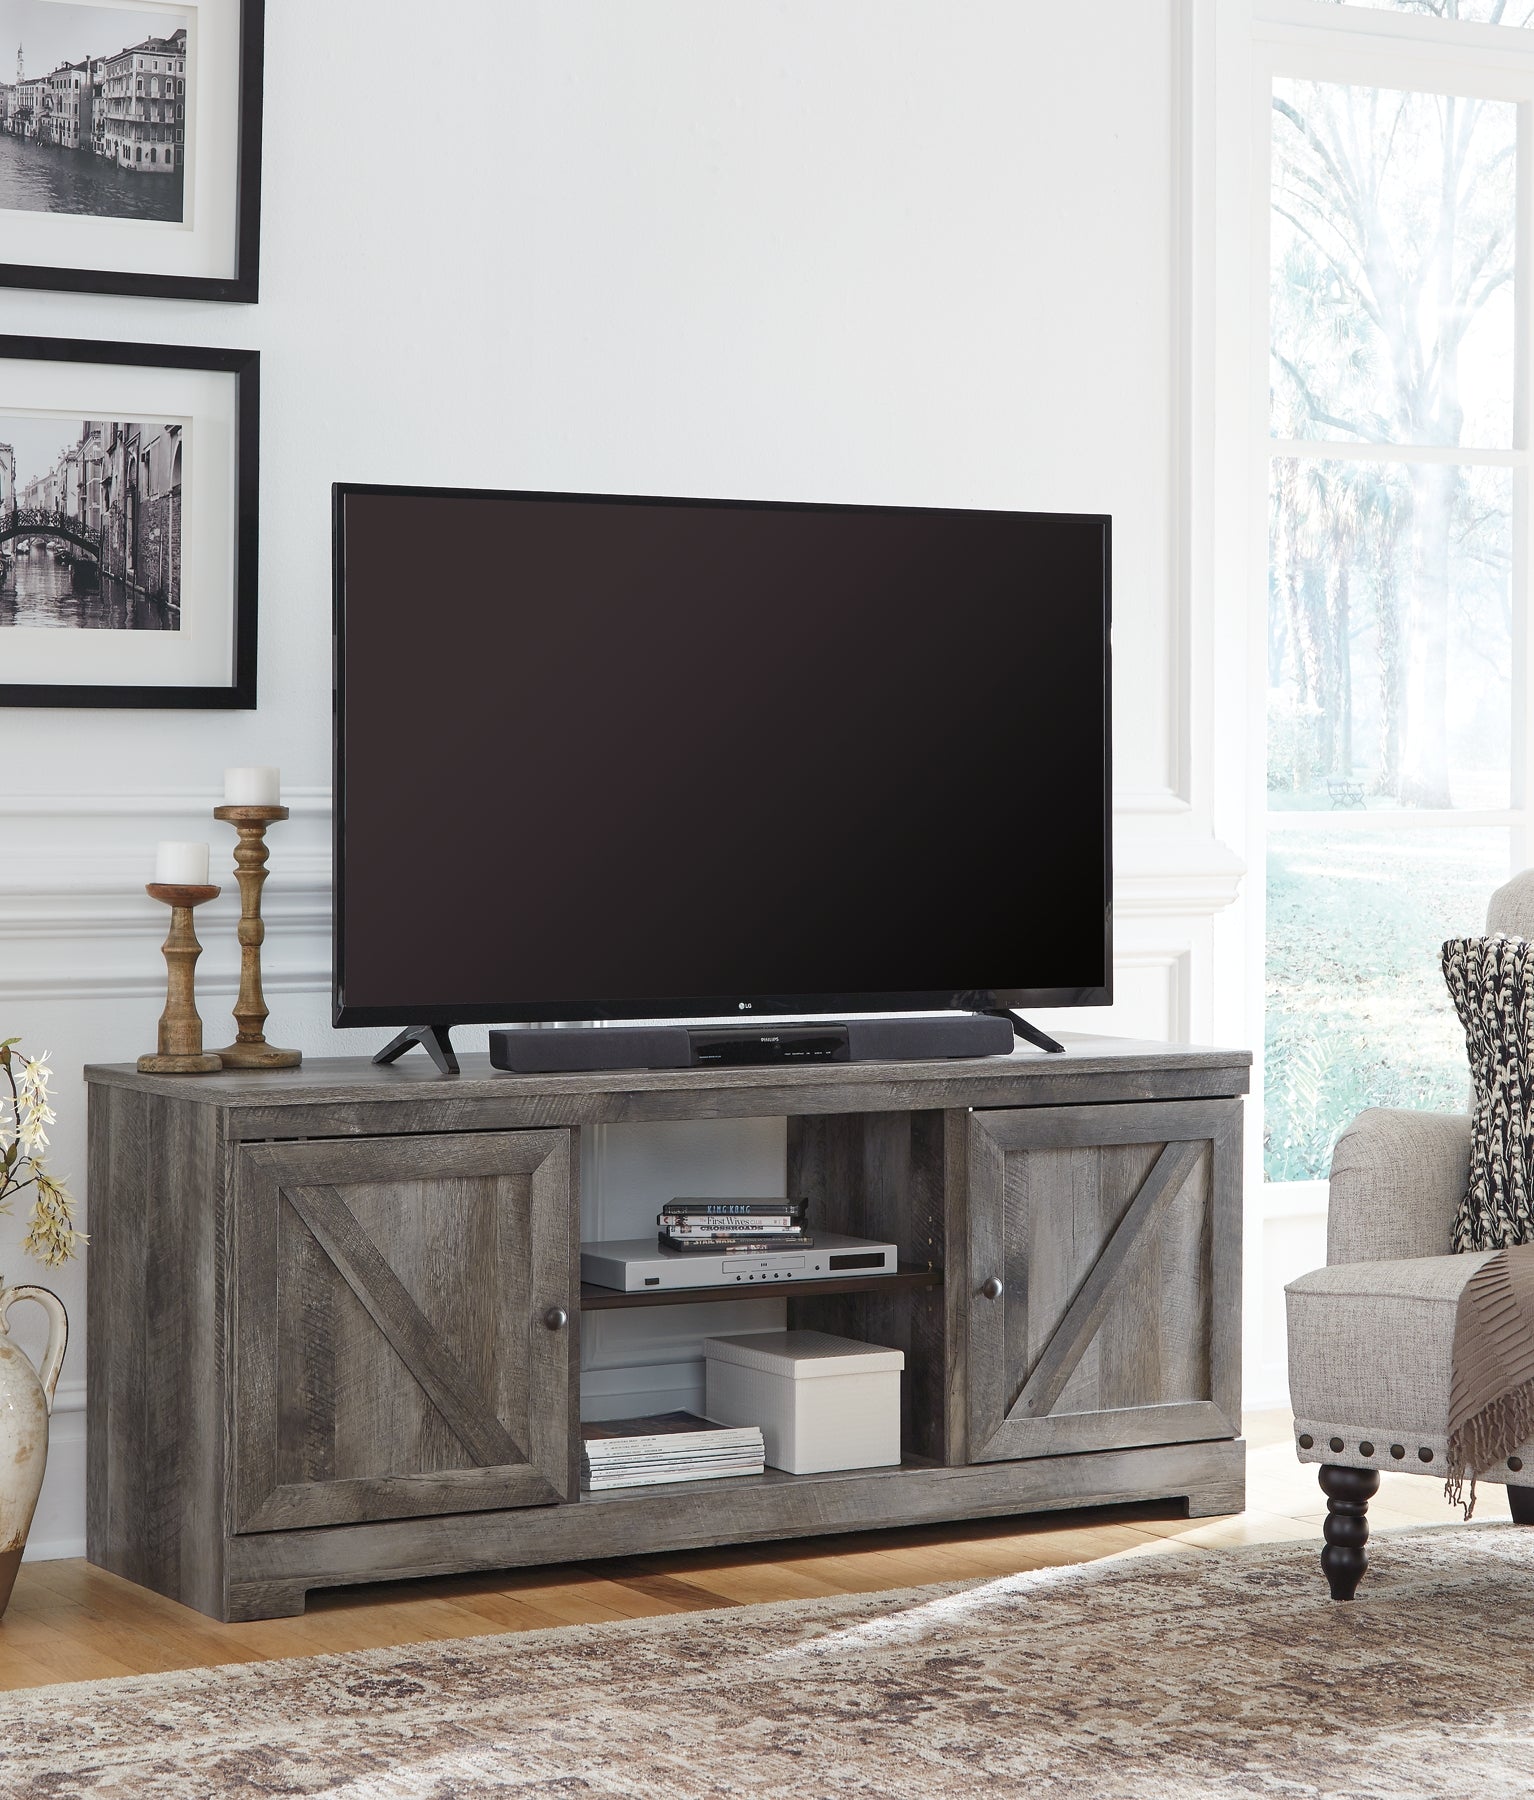 Wynnlow LG TV Stand w/Fireplace Option JB's Furniture  Home Furniture, Home Decor, Furniture Store